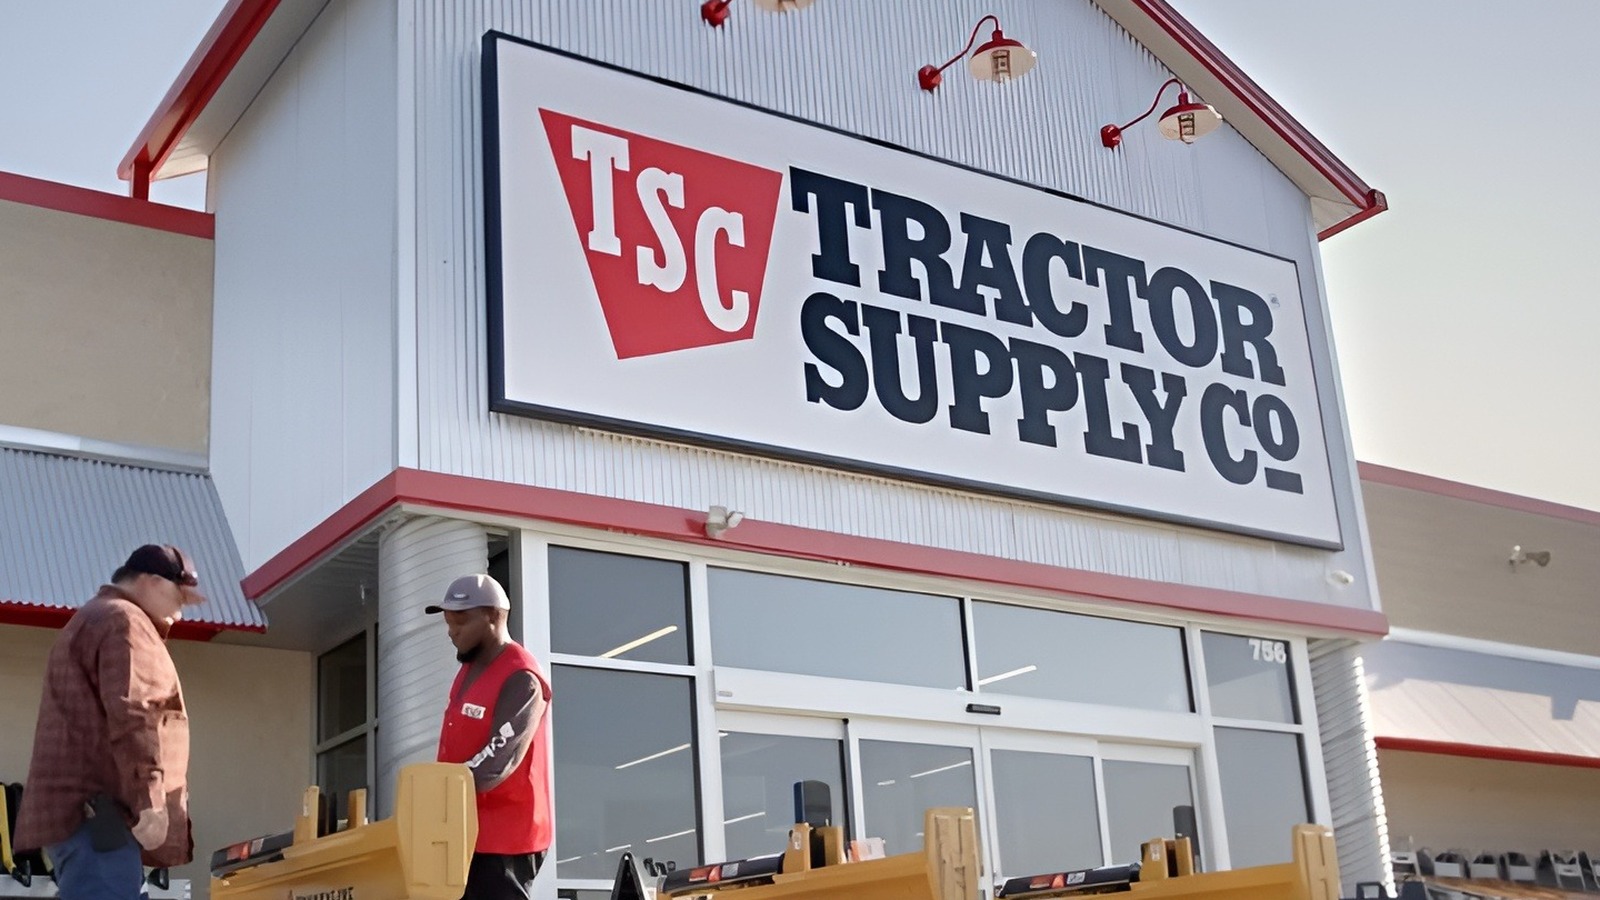 Las 5 mejores herramientas económicas que vale la pena comprar en Tractor Supply